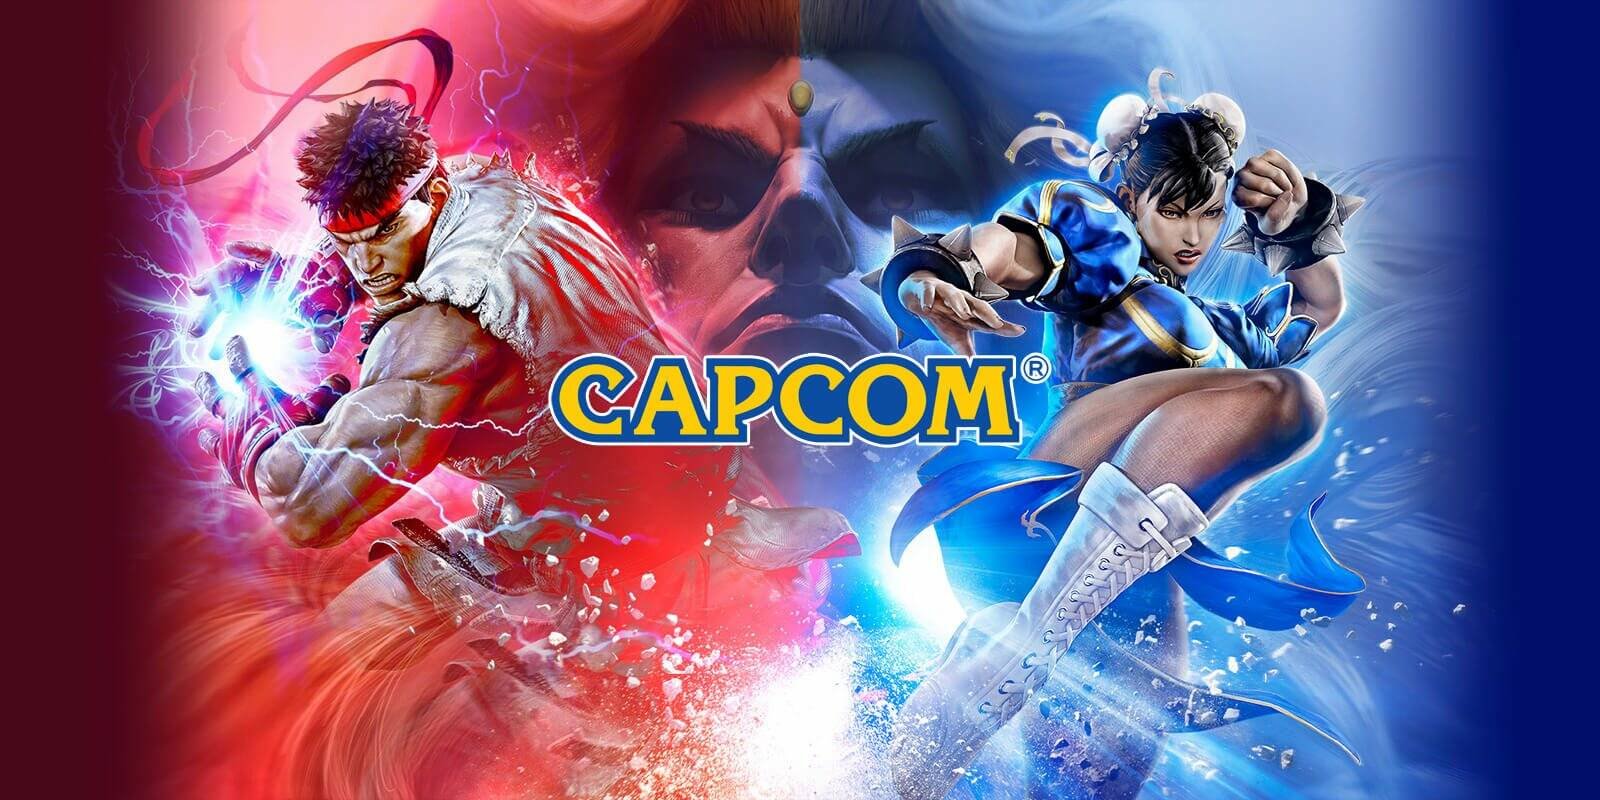 Immagine di Capcom sotto attacco hacker, richiesto un riscatto milionario